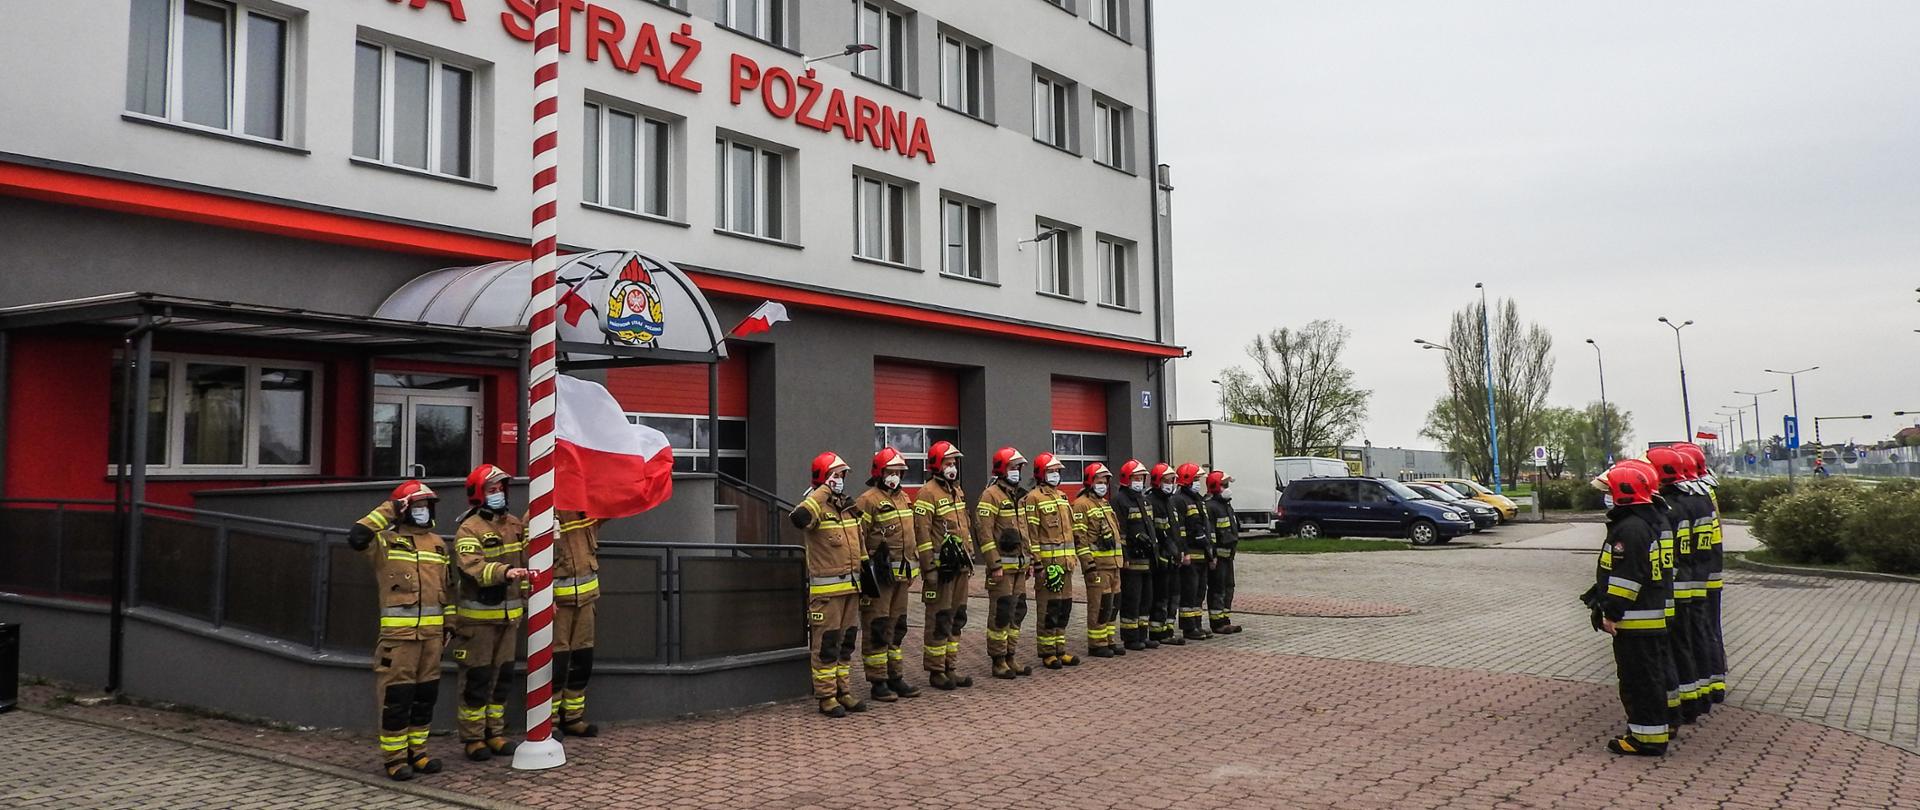 Zdjęcie przedstawia uroczystą zmianę służby w dniu 2 maja 2021 r. Podczas zmiany służby przed budynkiem komendy podniesiono flagę Polski i odegrano hymn państwowy. Strażacy występujący podczas zmiany ubrani byli w ubrania specjalne.